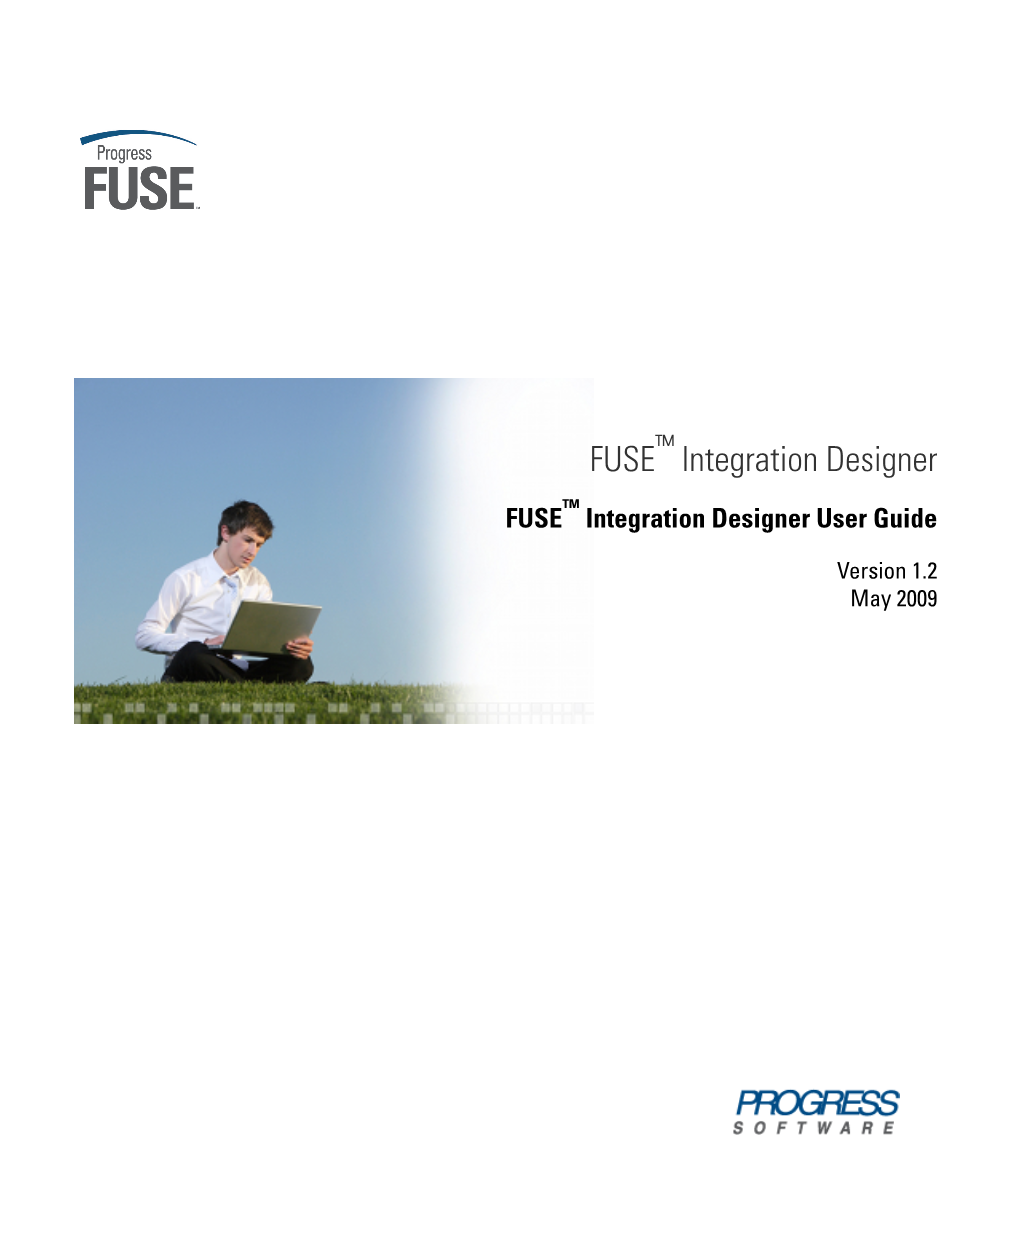 FUSE™ Integration Designer User Guide